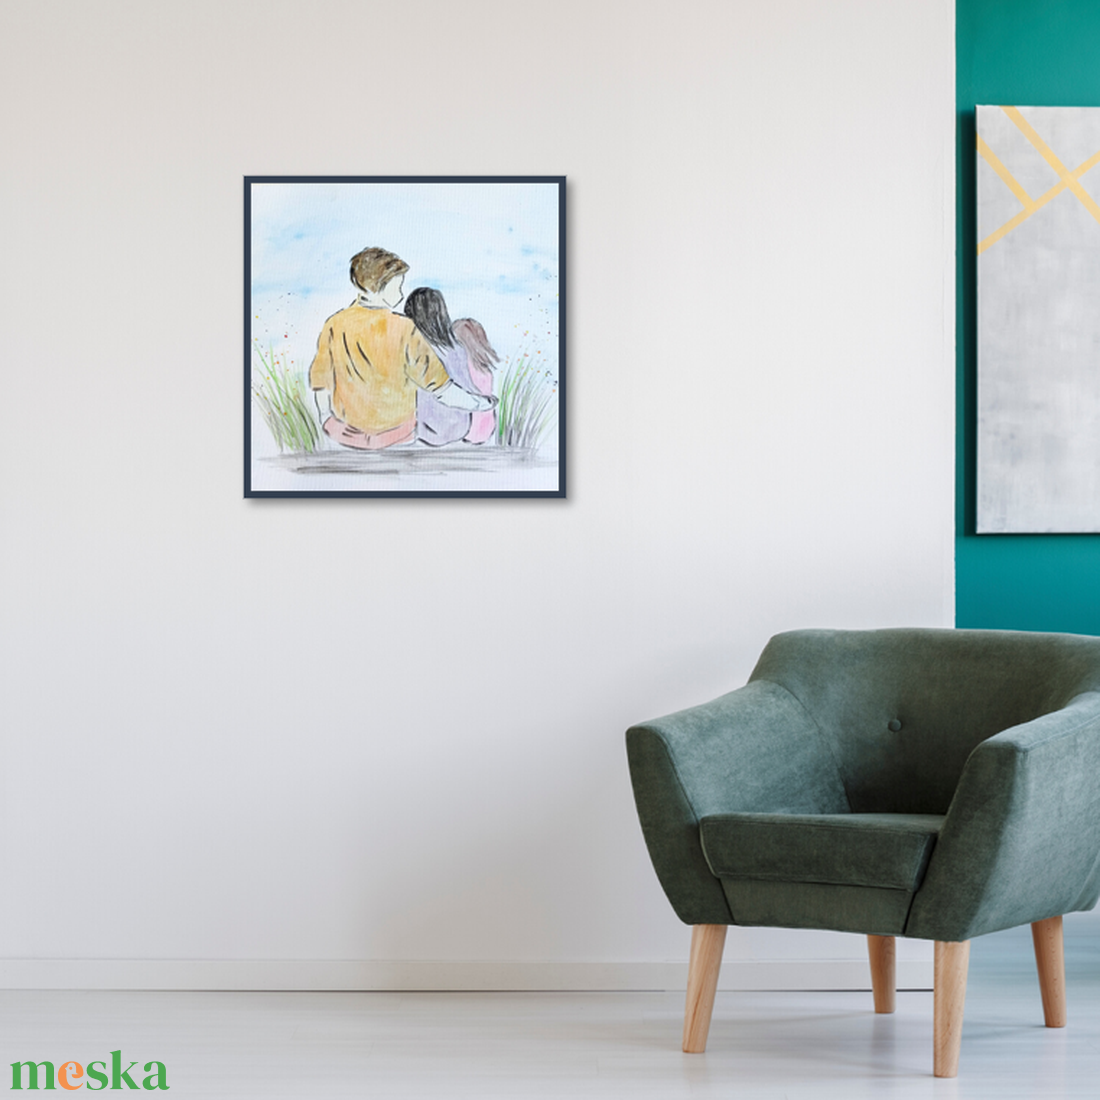 Egyedi családi festmény ajándékba szülőknek, családnak-eredeti festmény, kérhető saját felirattal, monogrammal, dátummal - művészet - festmény - festmény vegyes technika - Meska.hu